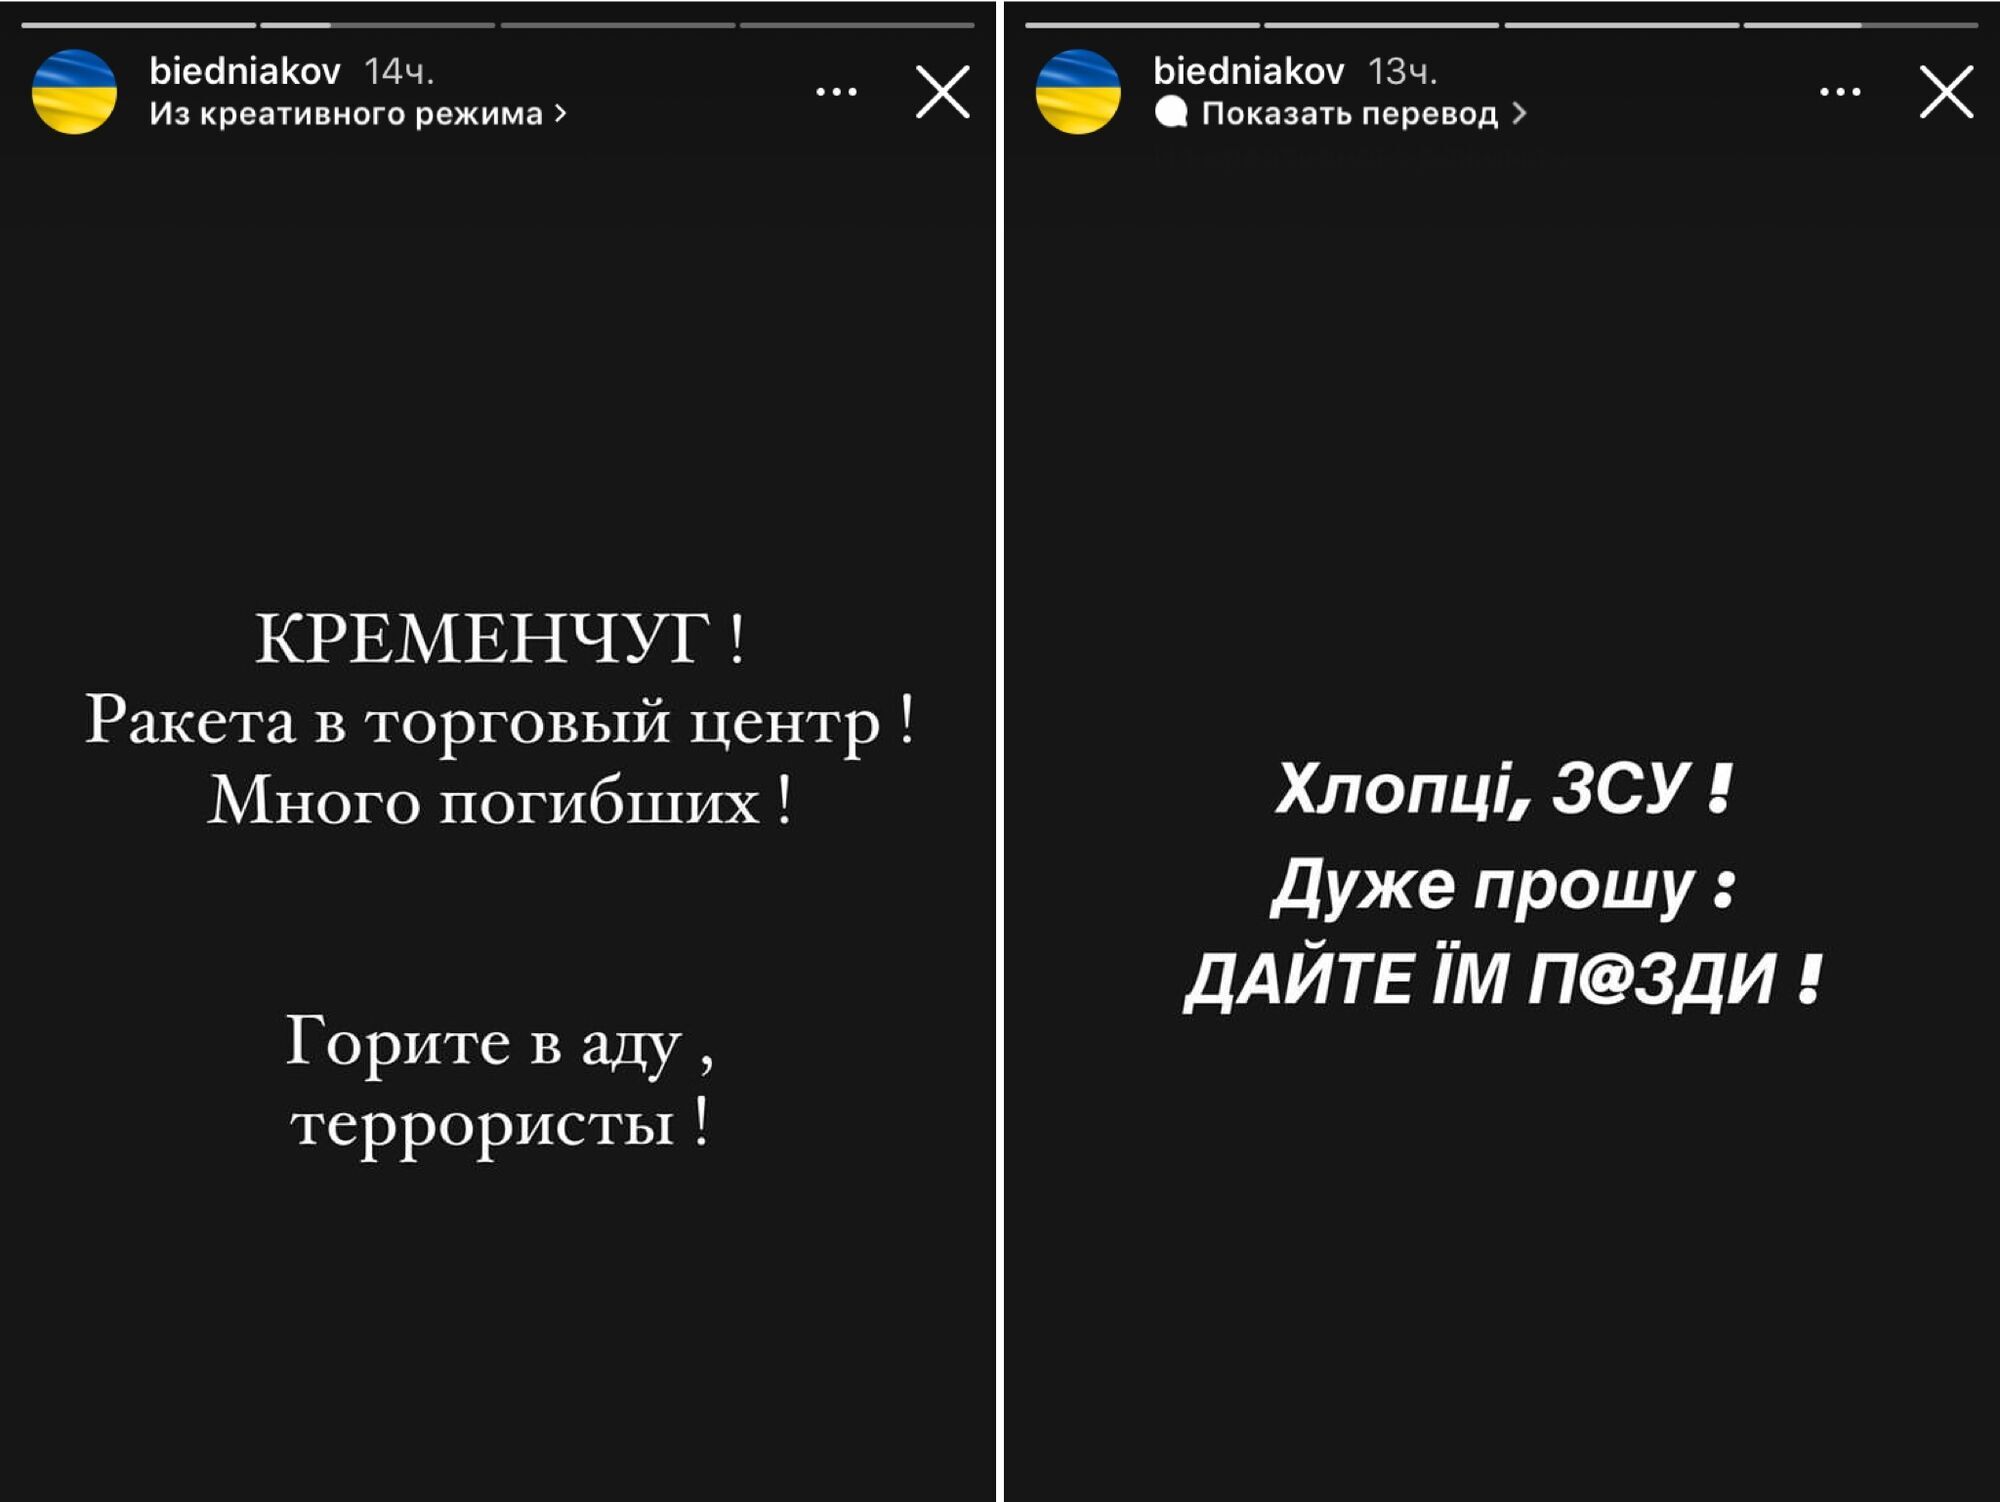 Ротару, Осадчая, Бедняков и другие звезды жестко отреагировали на обстрел ТЦ в Кременчуге: не простим никогда